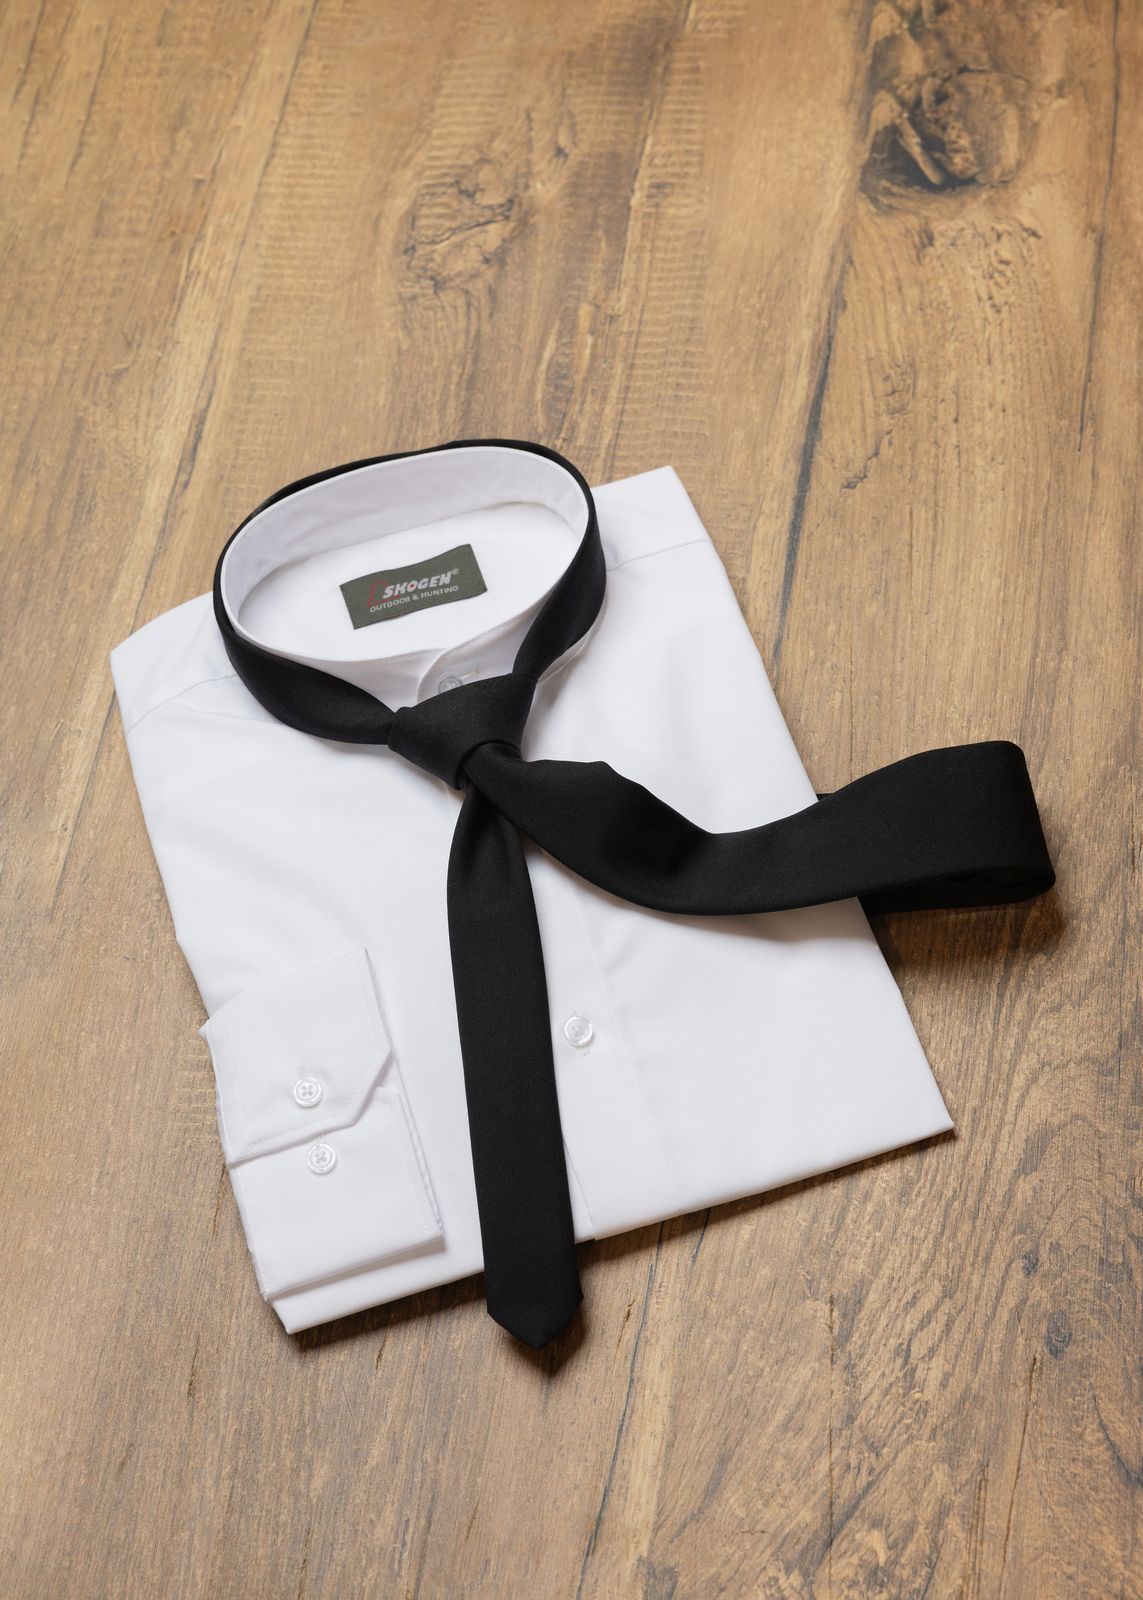 glattes weißes Stehkragenhemd mit schwarzer schmaler Krawatte